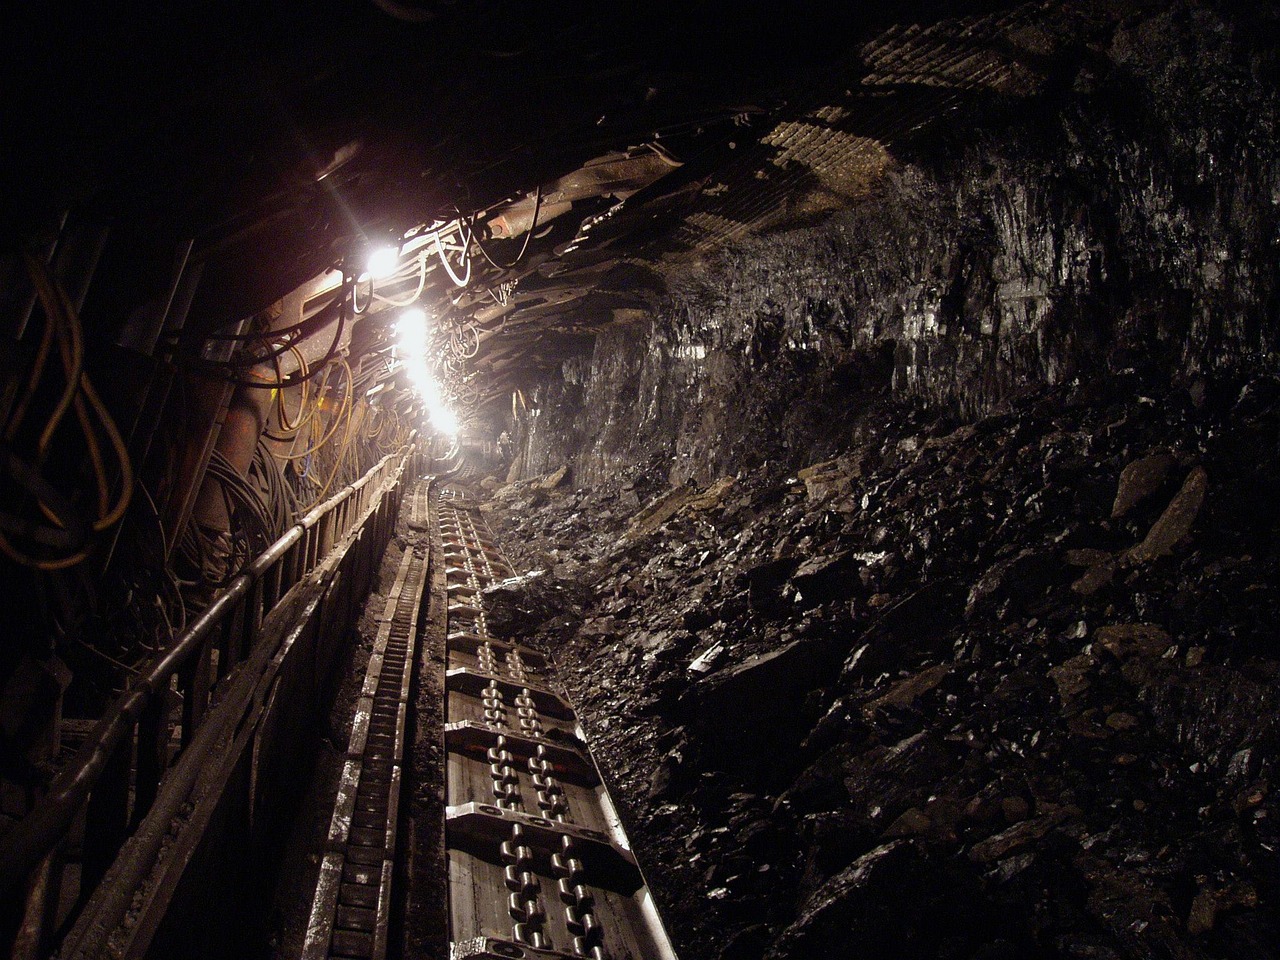 Poland proposes coal mine expansion while lawsuit challenges largest European coal plant